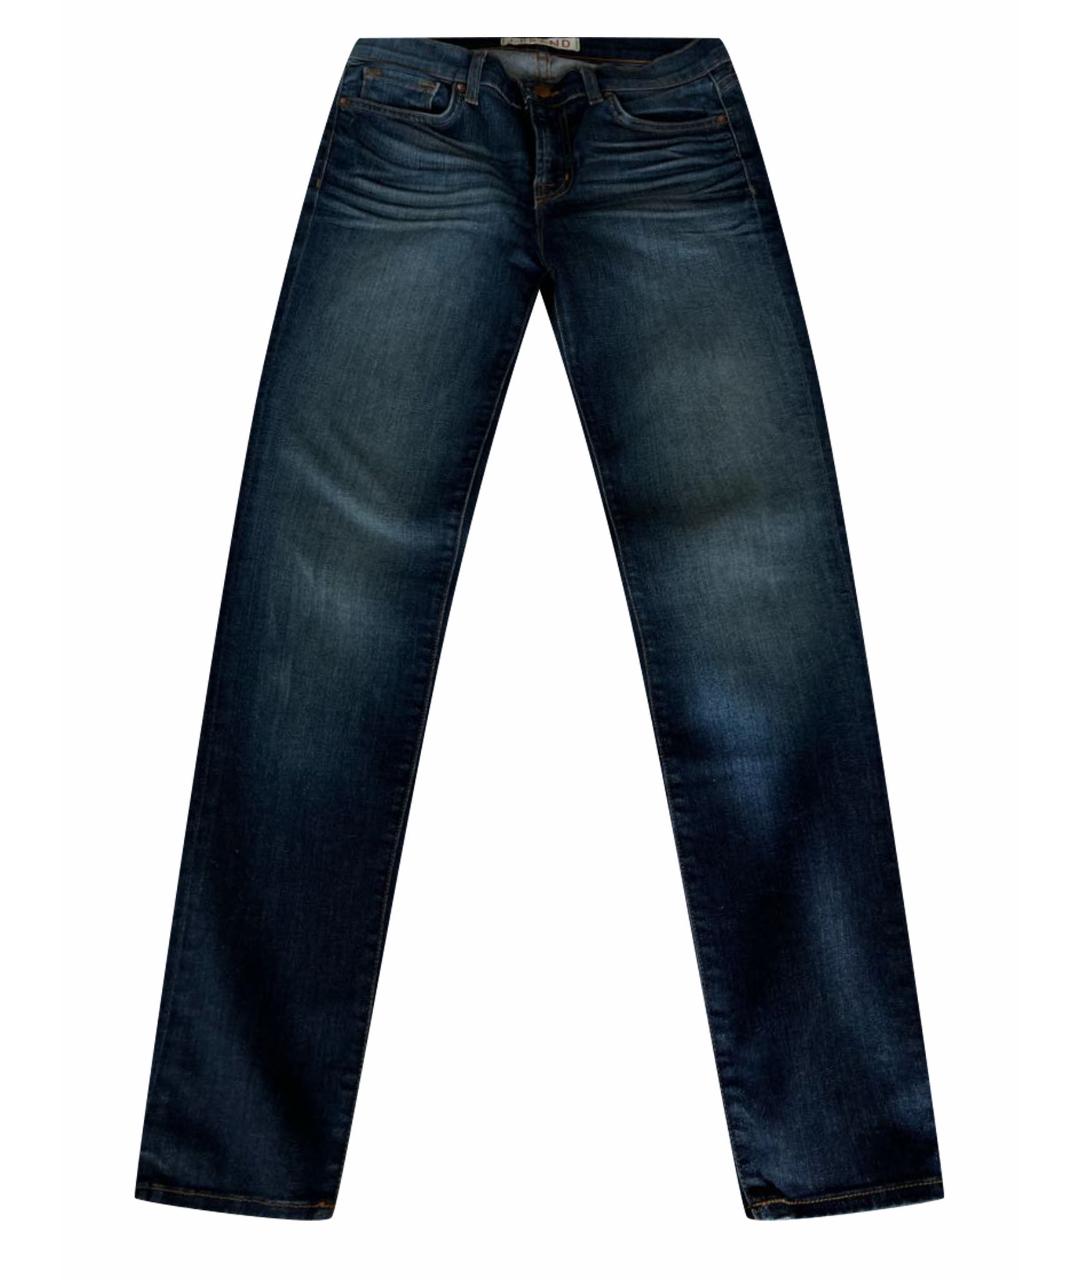 JBRAND Синие хлопковые джинсы слим, фото 1